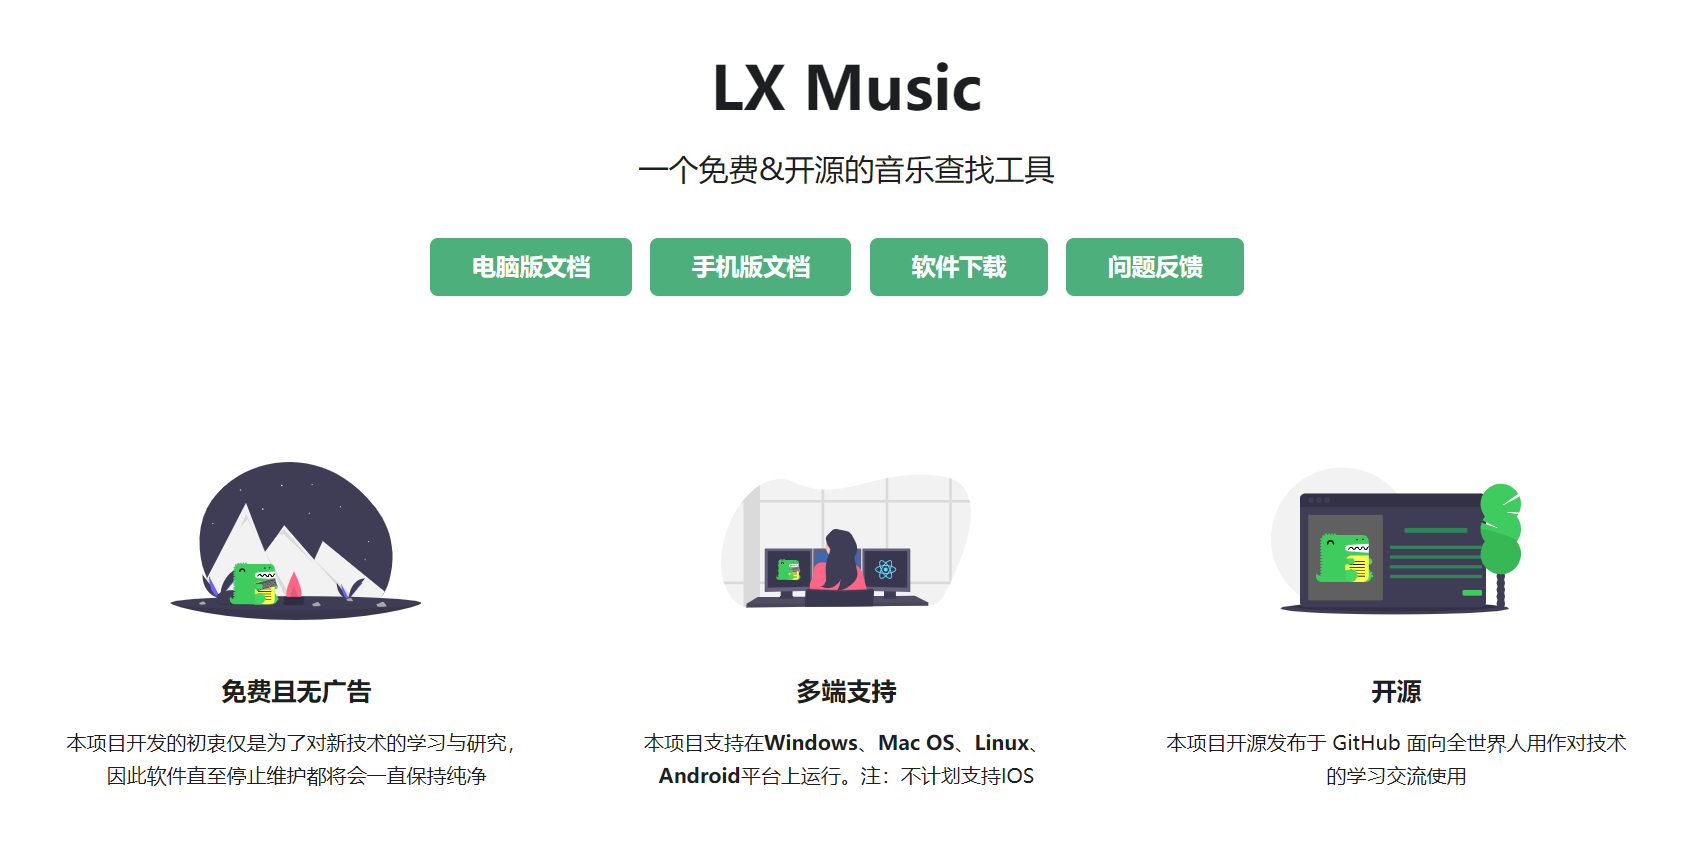 好用工具第3期:全平台免费音乐LxMusic